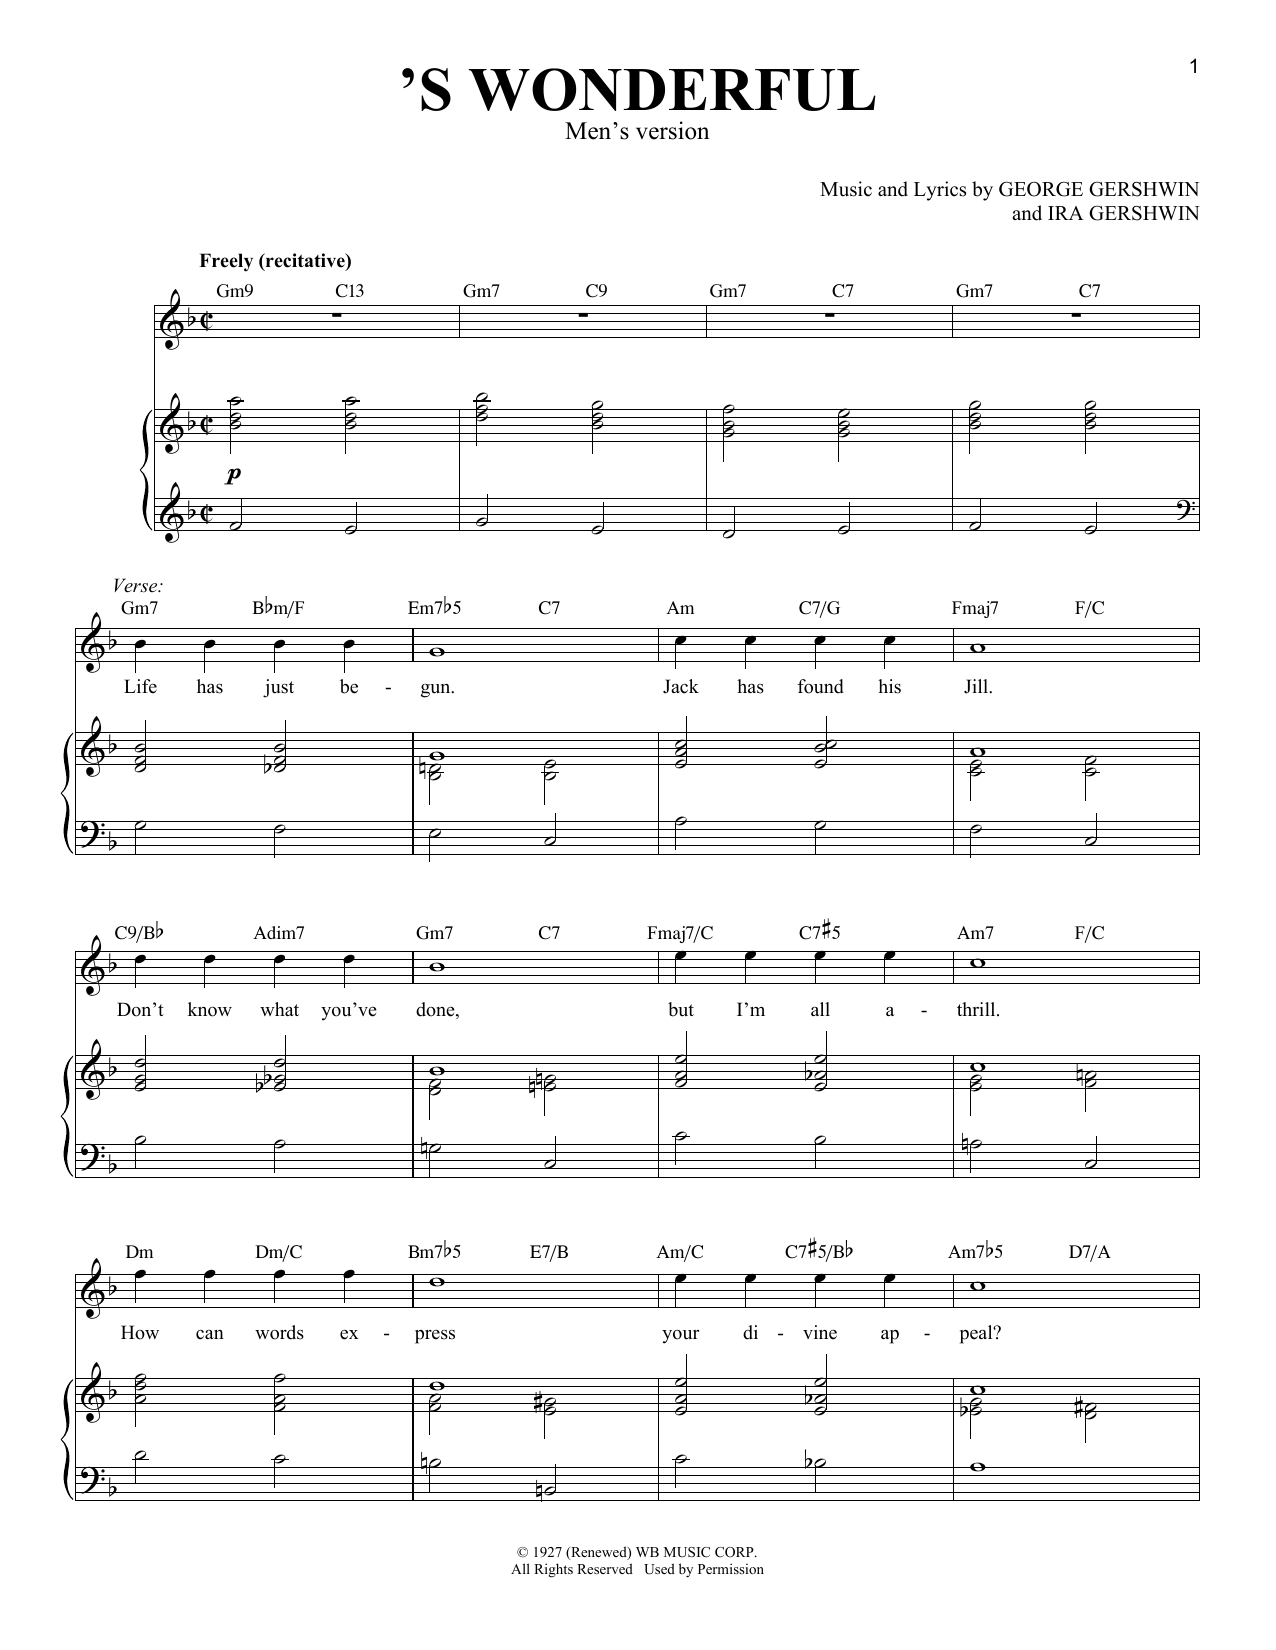 Download George Gershwin 'S Wonderful [Men's version] Sheet Music